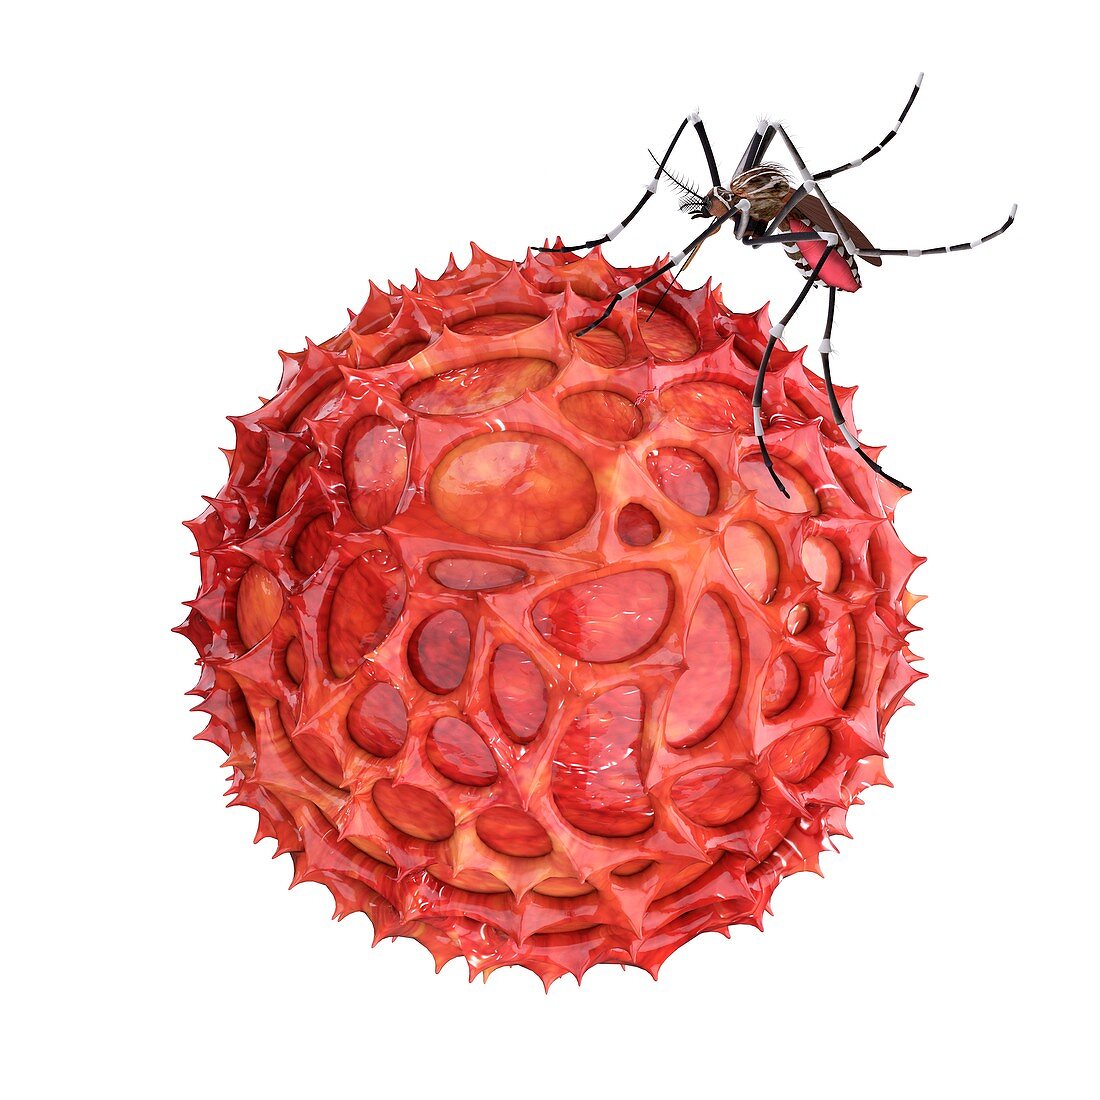 Mosquito and Zika virus,illustration